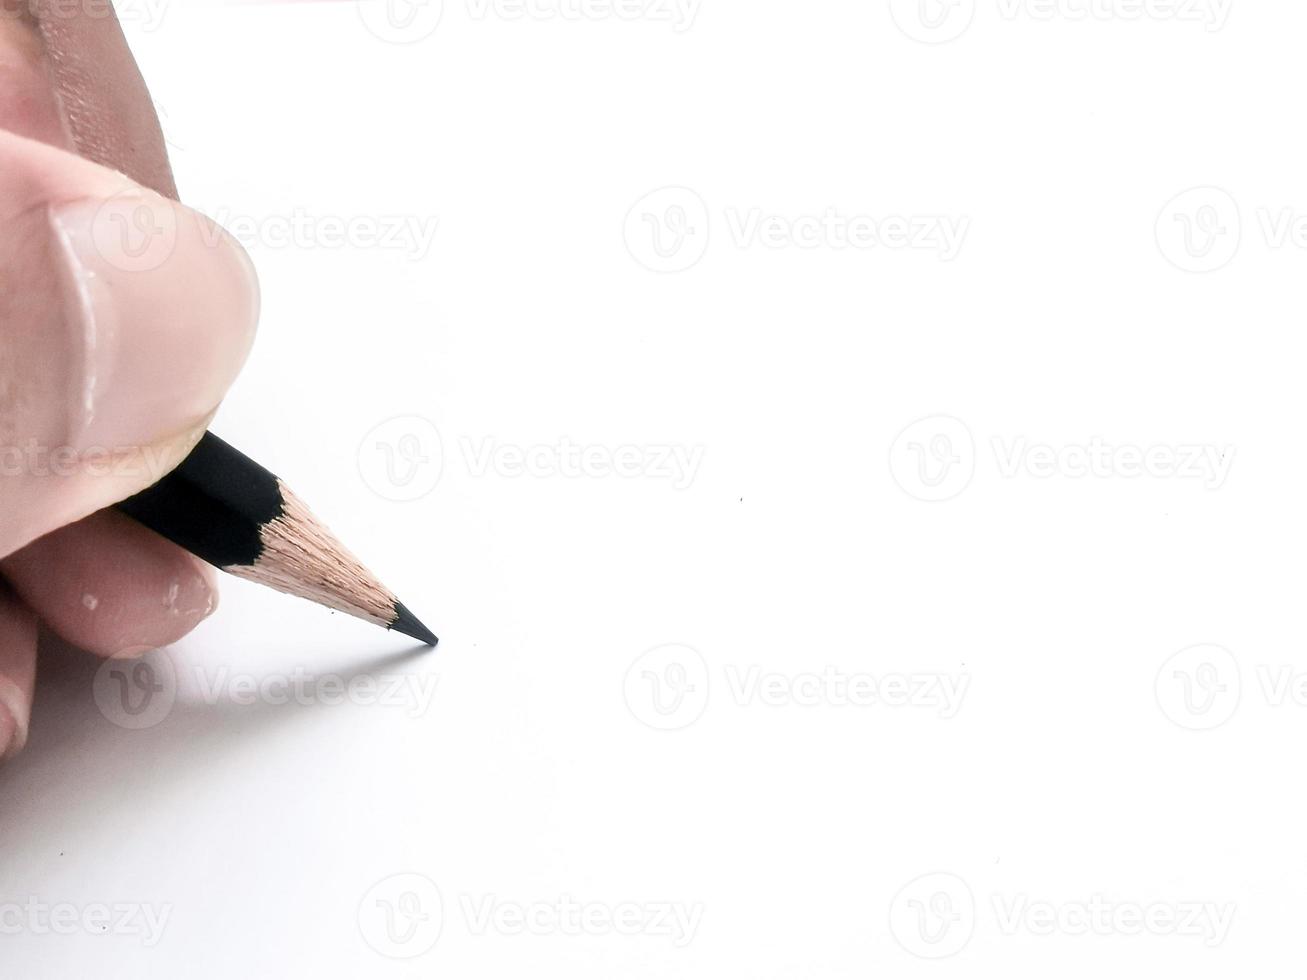 Hand, die einen schwarzen Stift hält, der bereit ist, etwas auf Papier zu schreiben foto